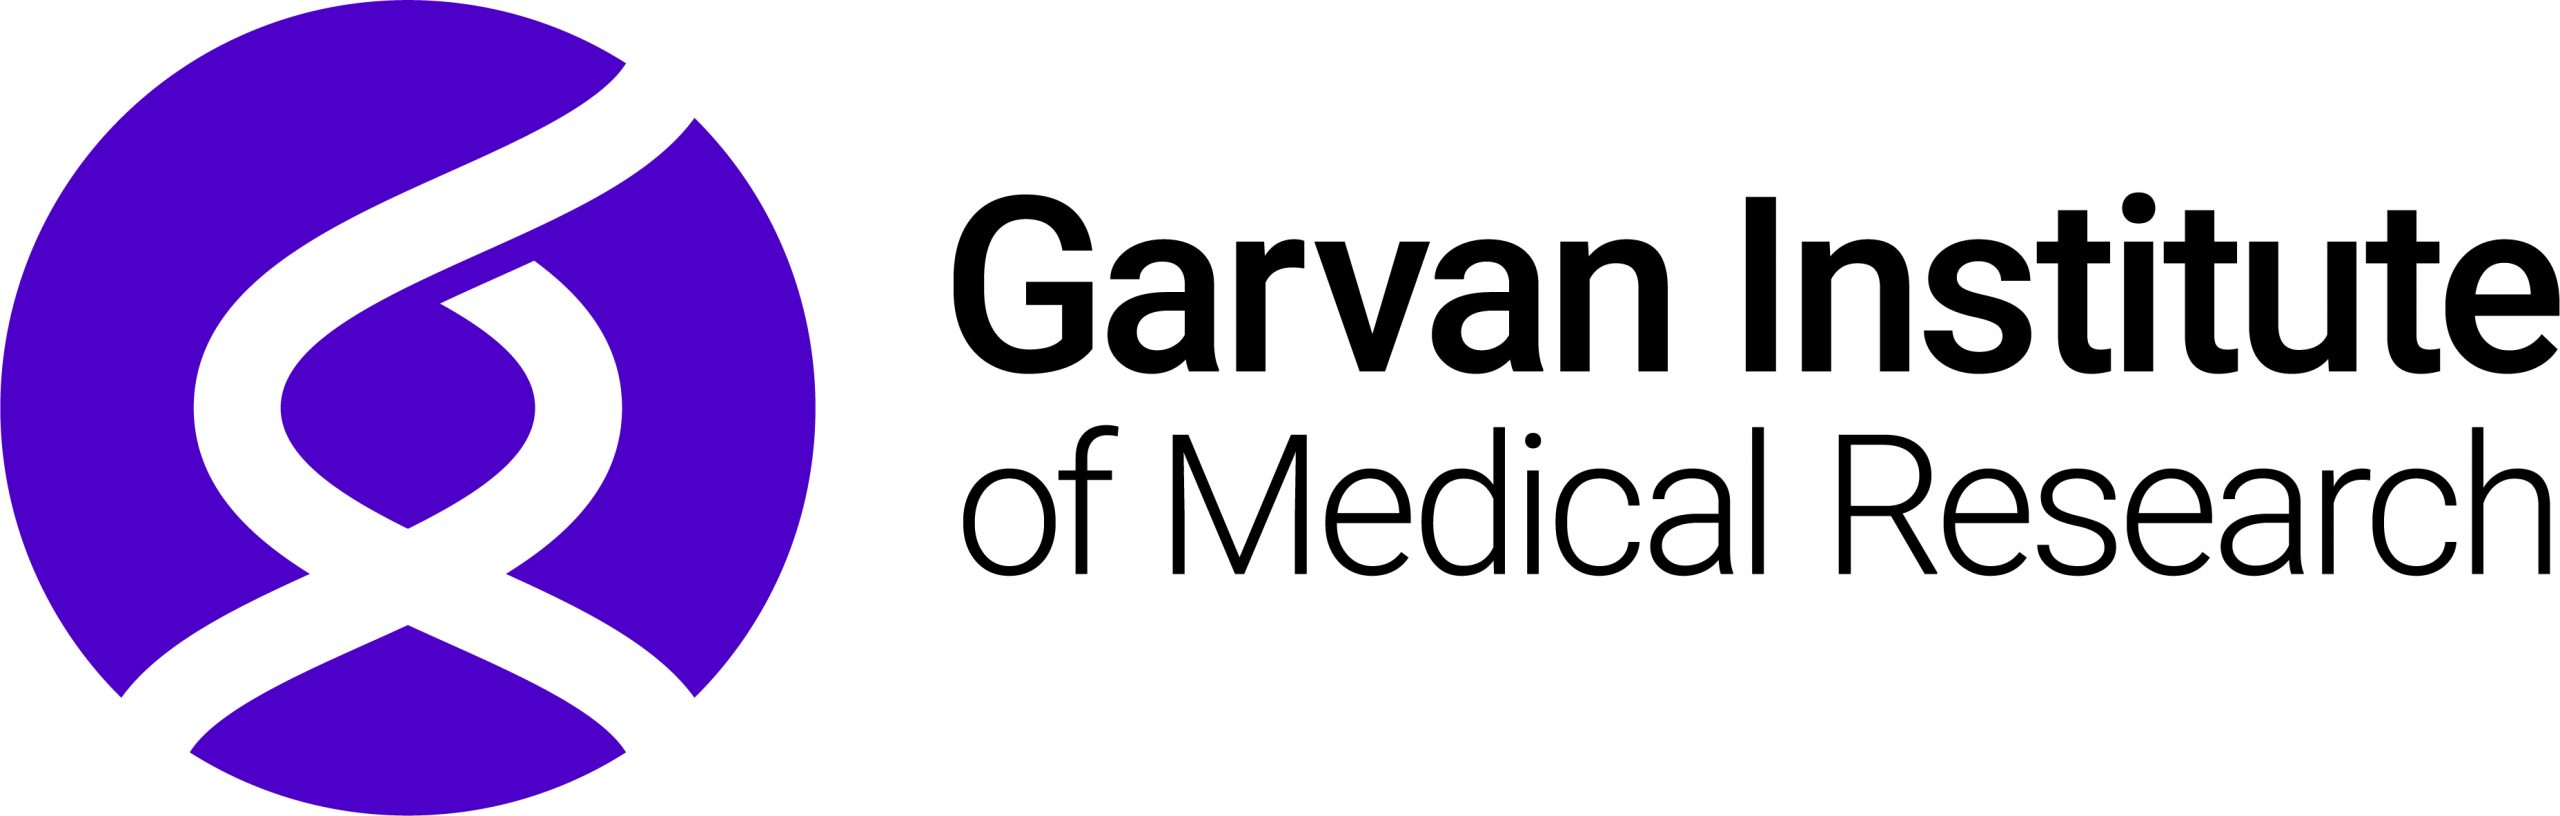 Garvan Institute of Medical Research logo